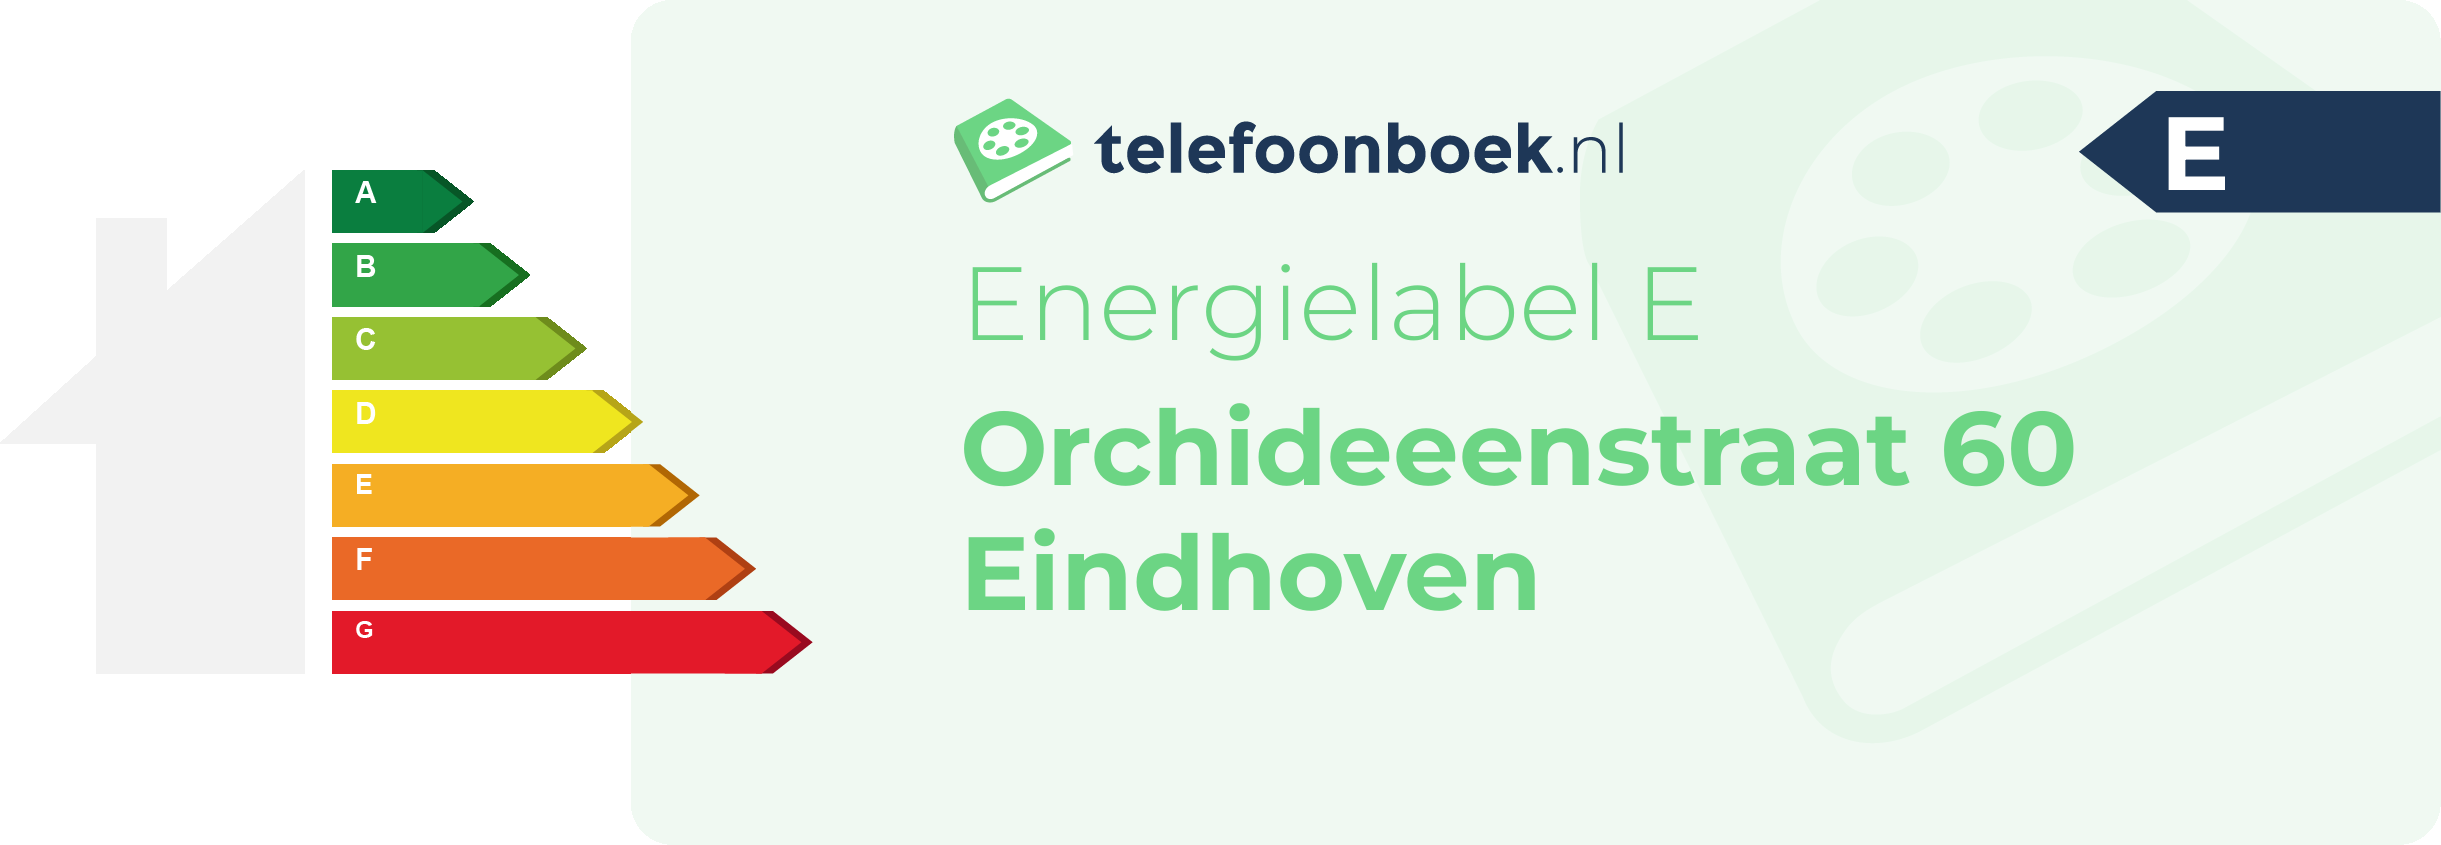 Energielabel Orchideeenstraat 60 Eindhoven